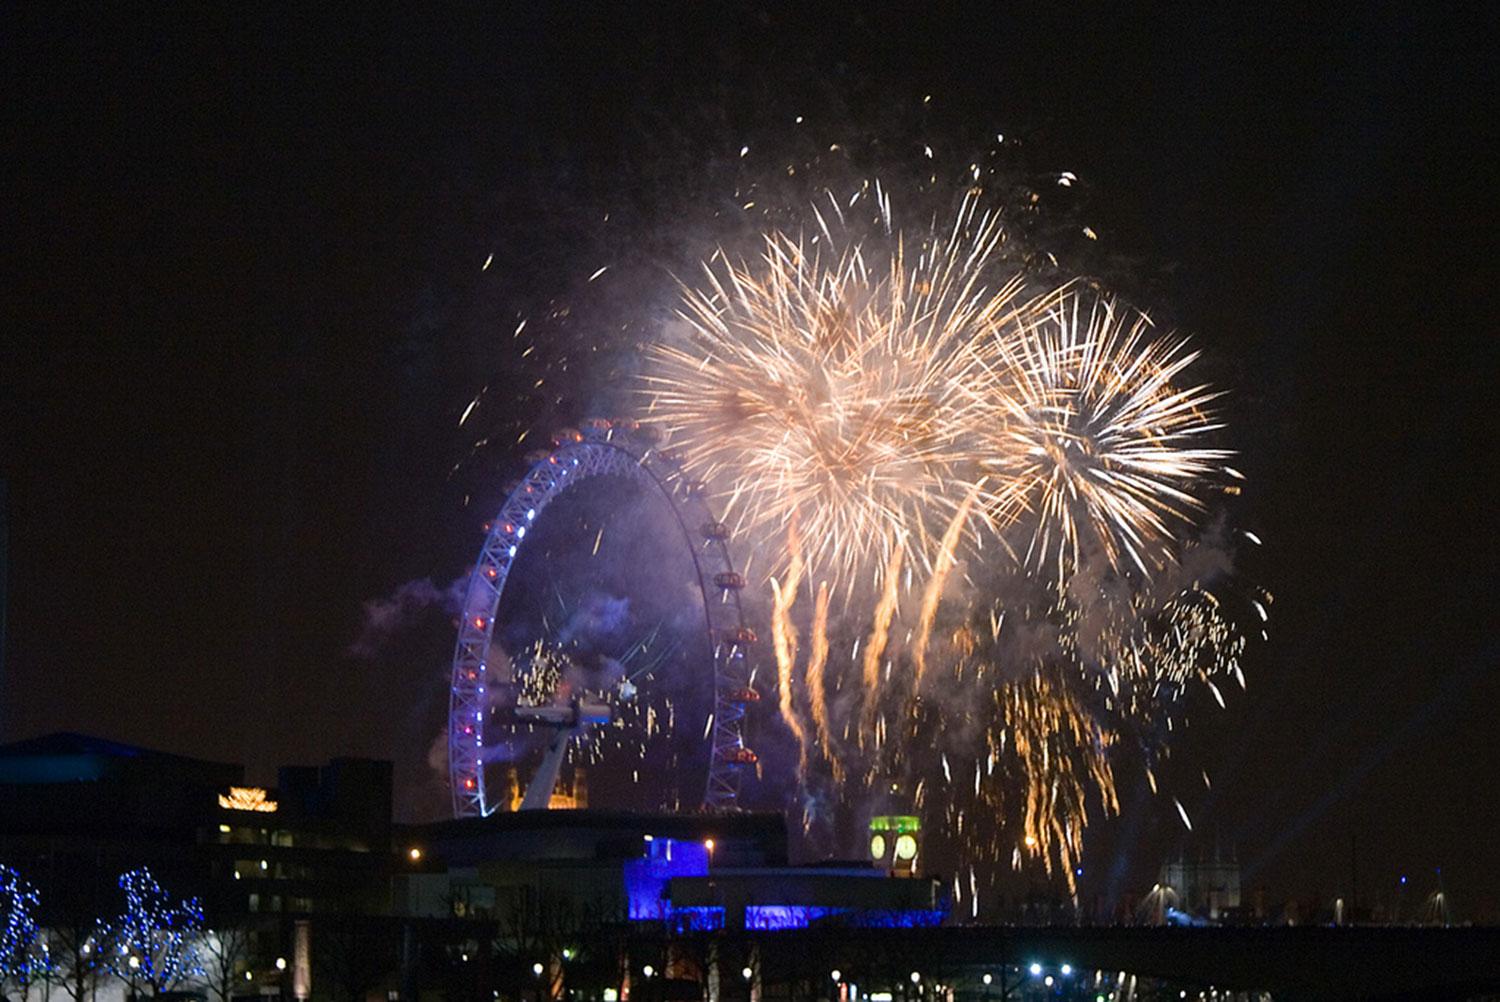 Mäktigast utsikt över nyårsfyrverkerierna får du från London Eye.